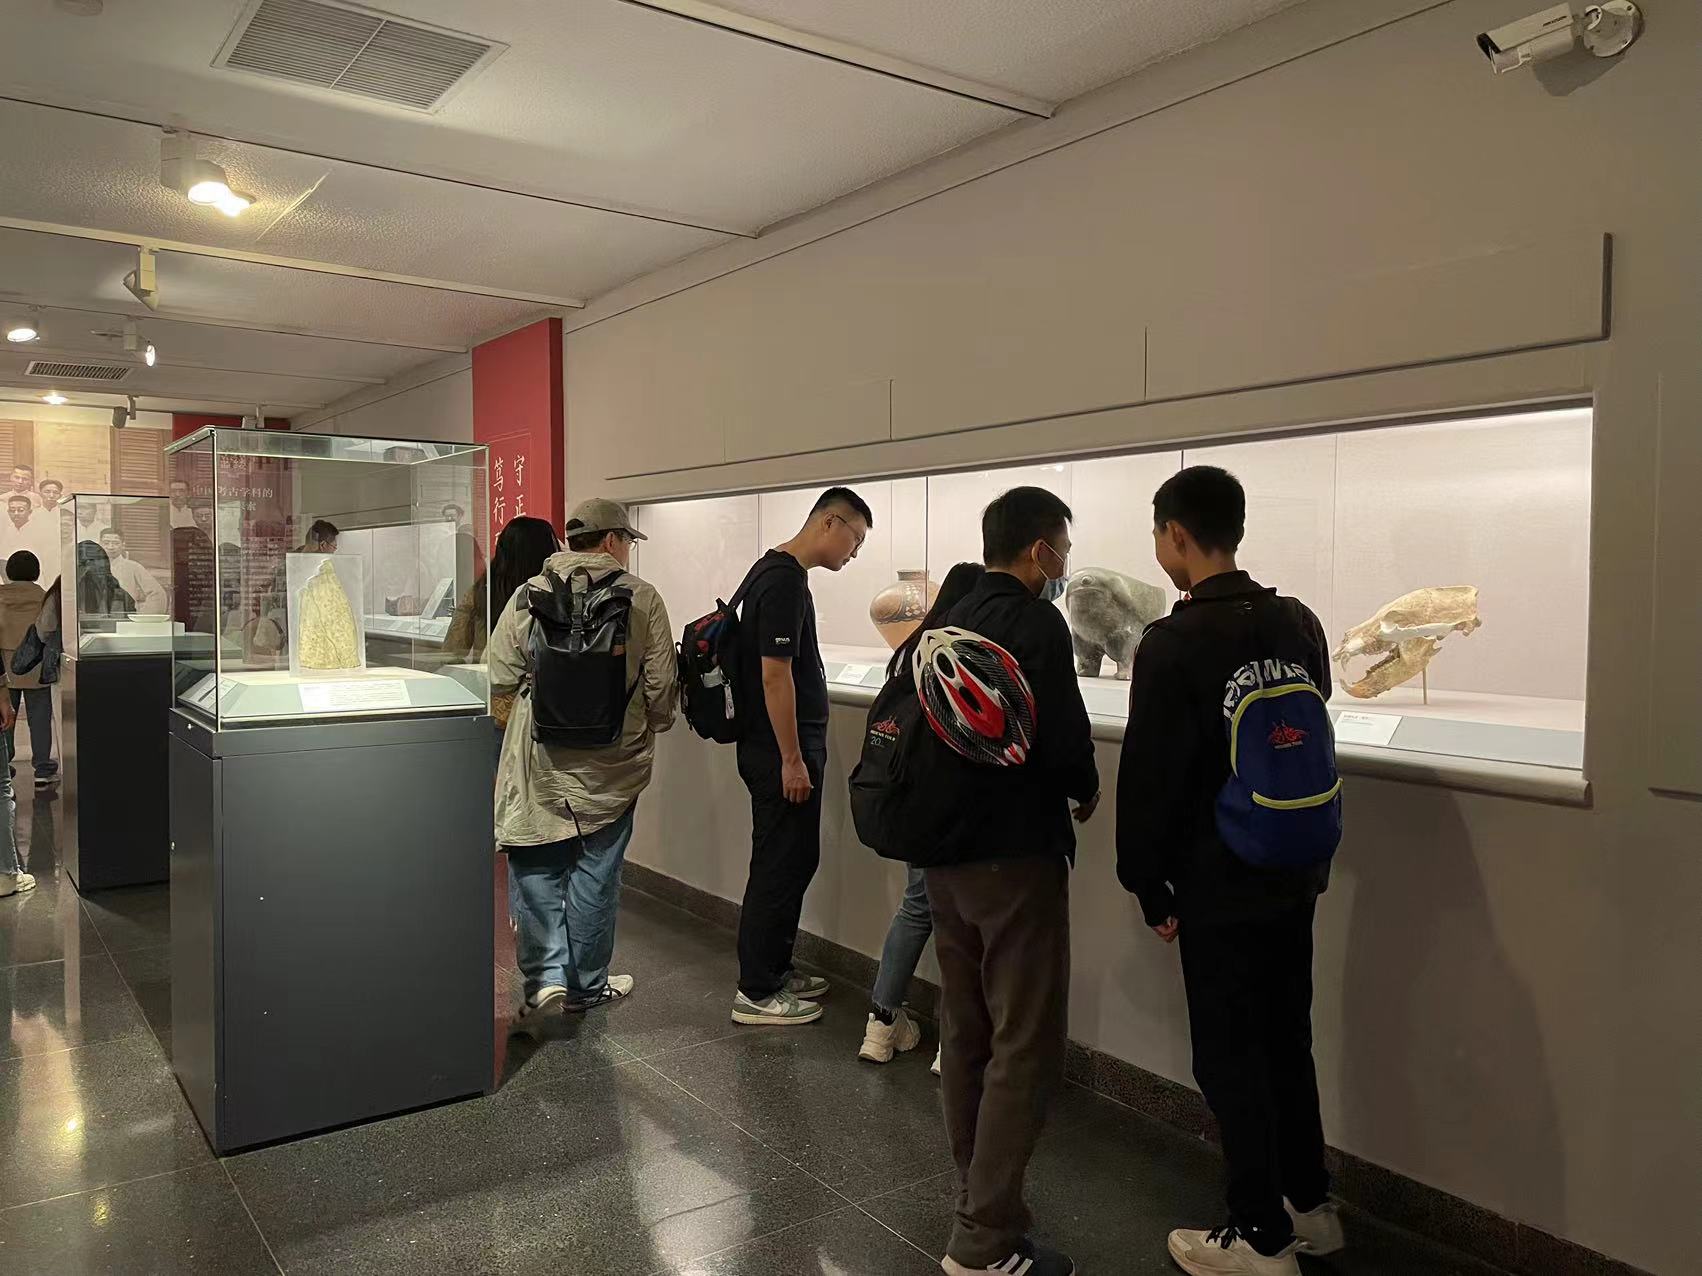 塞克勒考古與藝術博物館開放參觀。新京報記者徐彥琳 攝